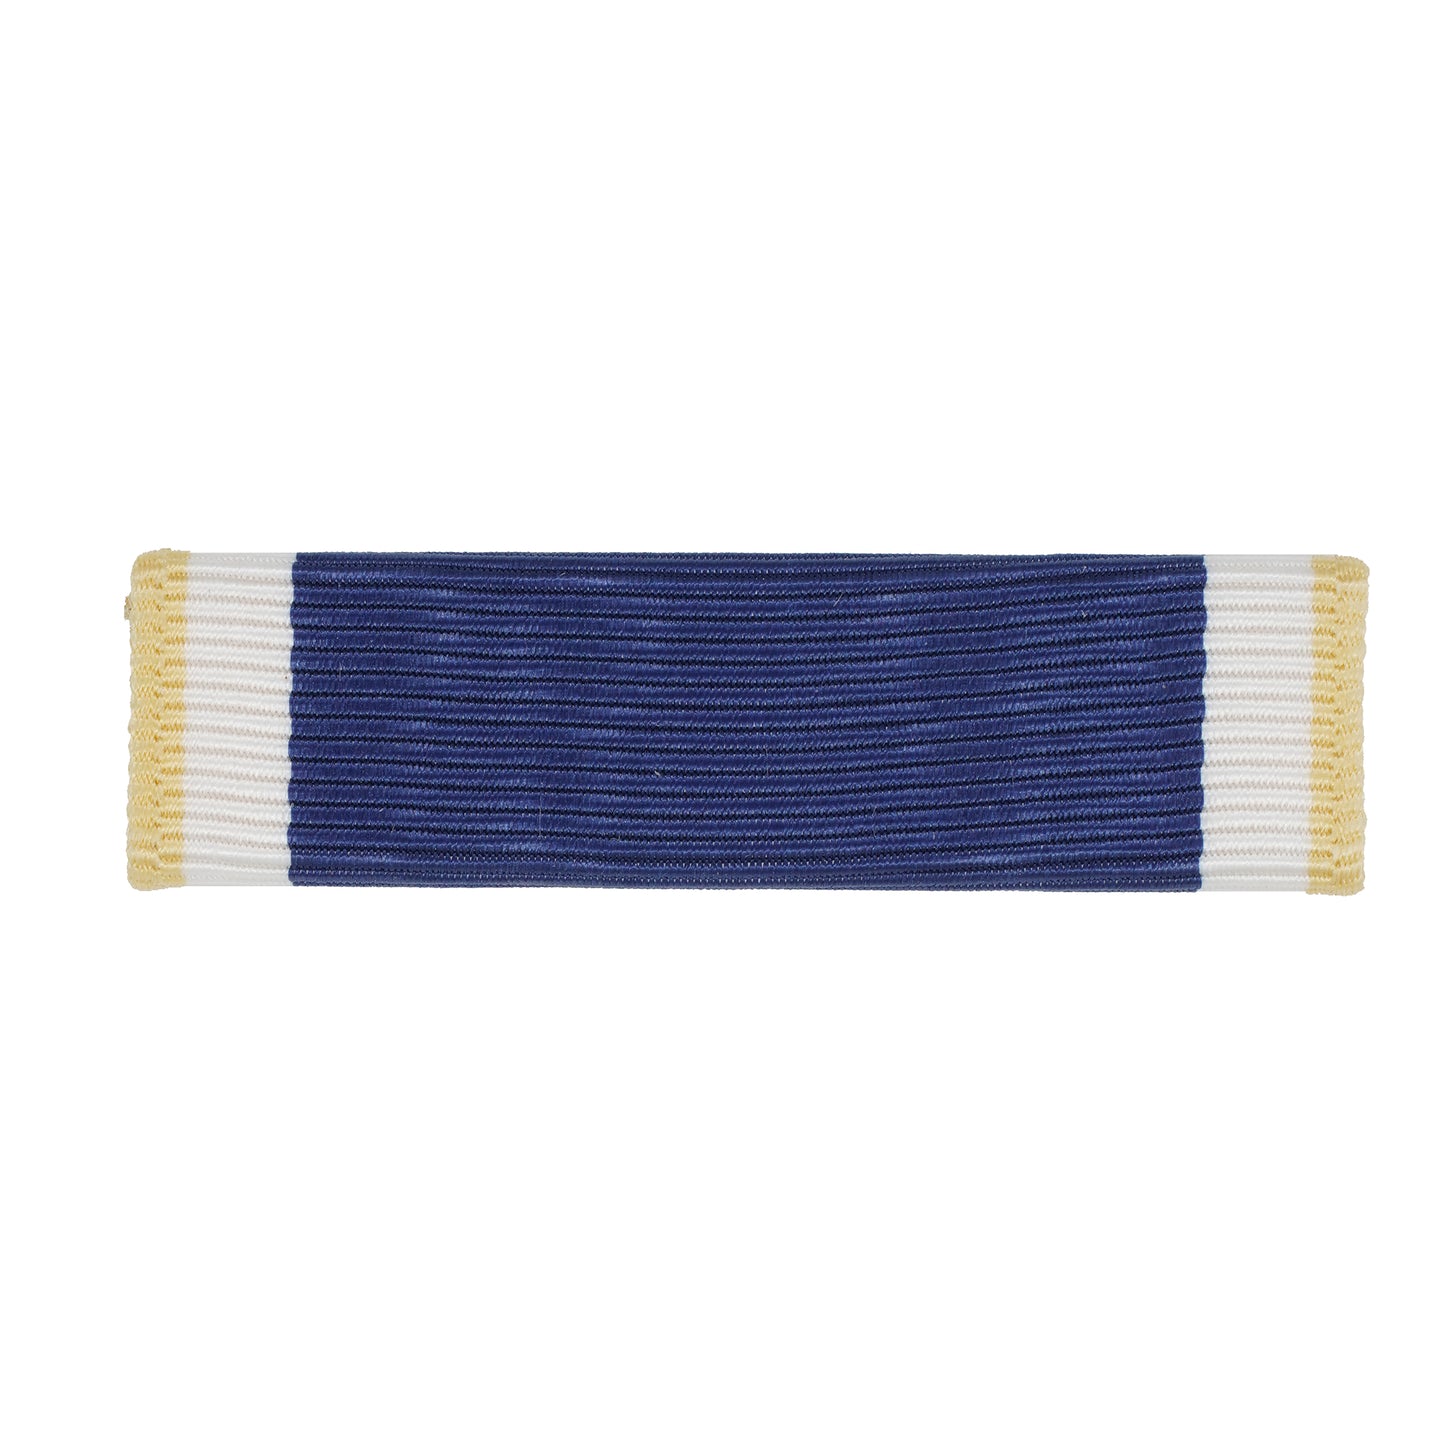 U.S. Navy "E" Ribbon